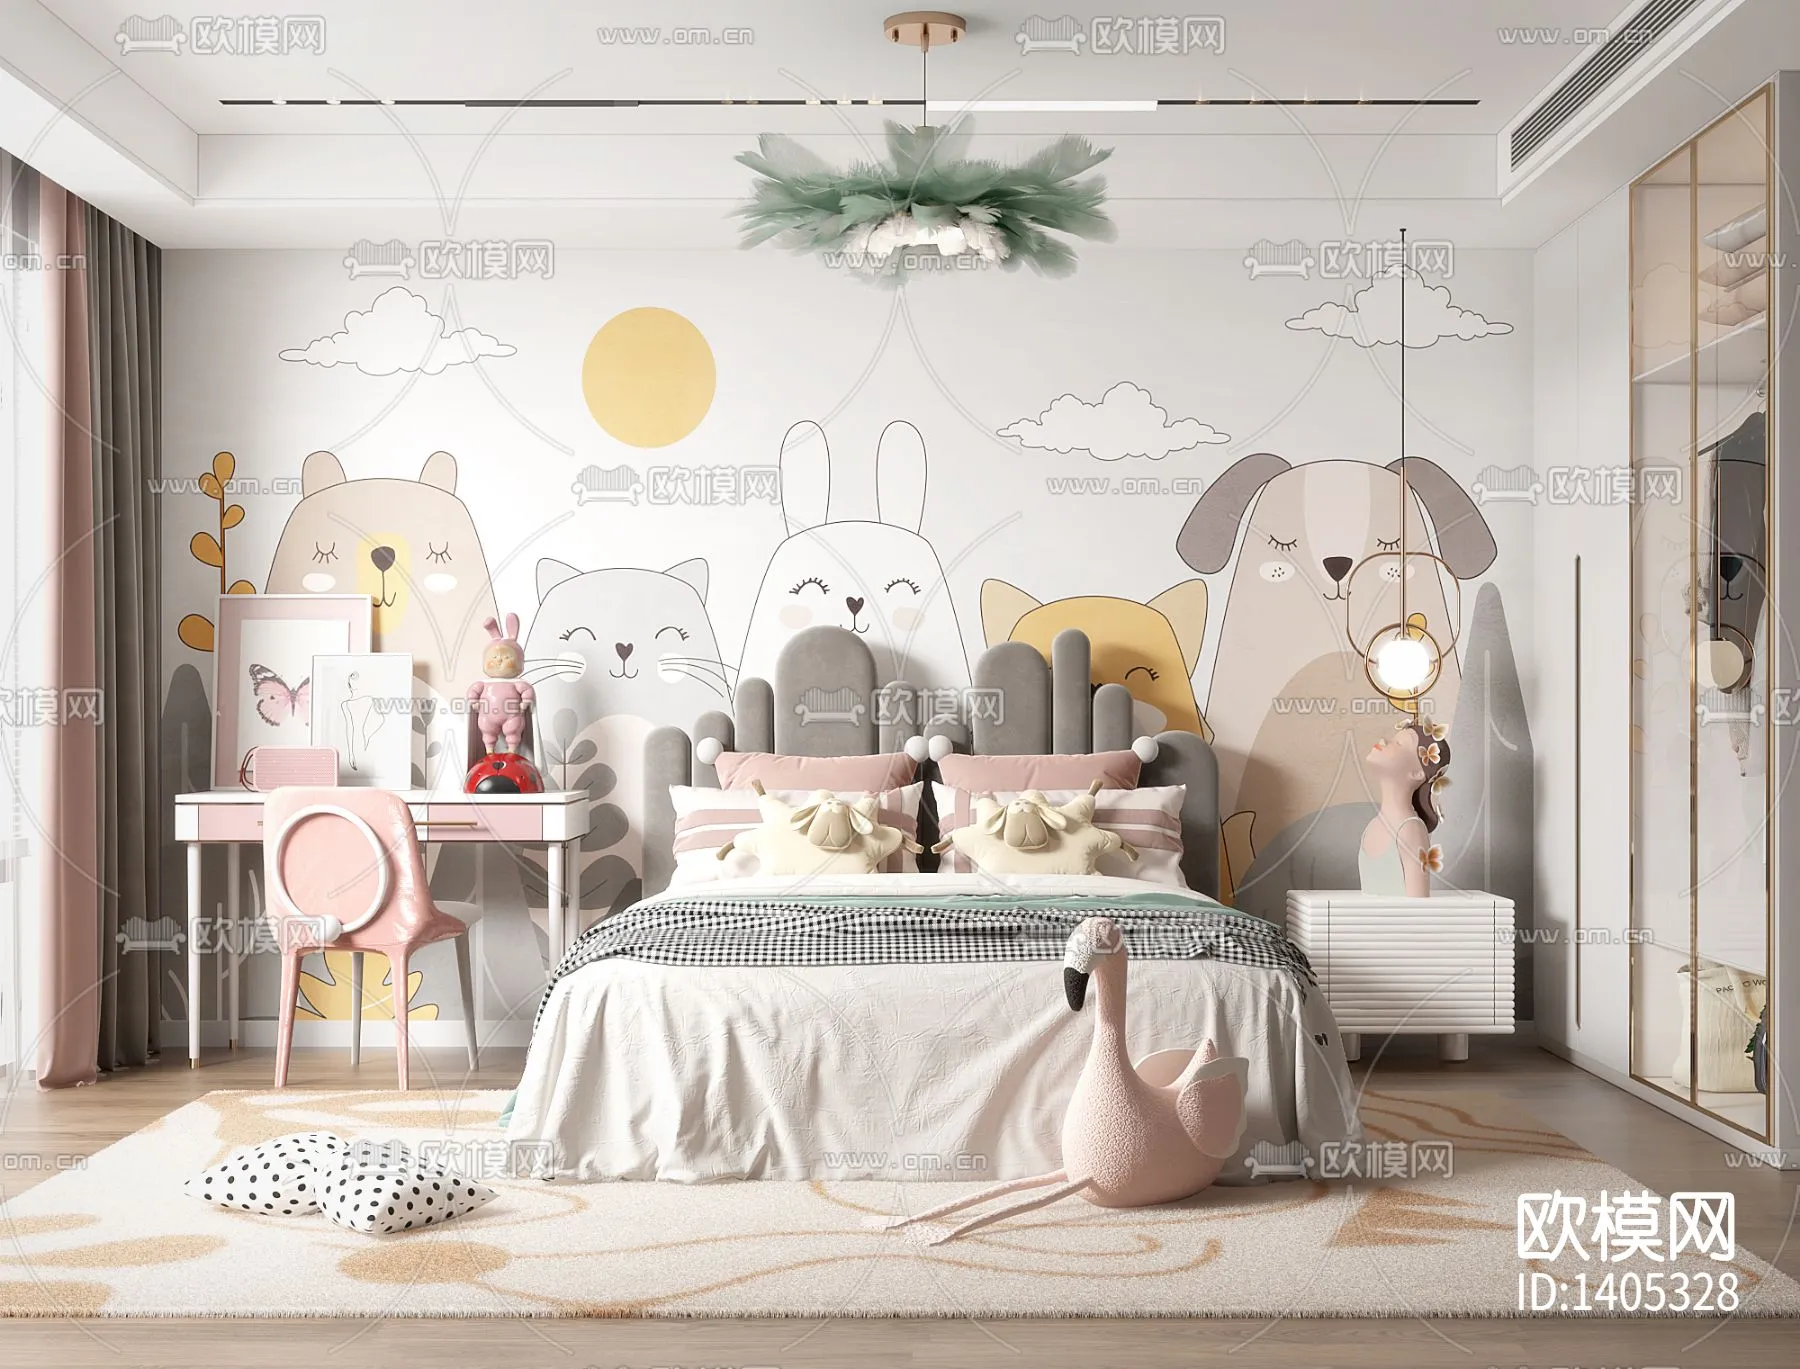 Children Room 3D Scenes – 0395